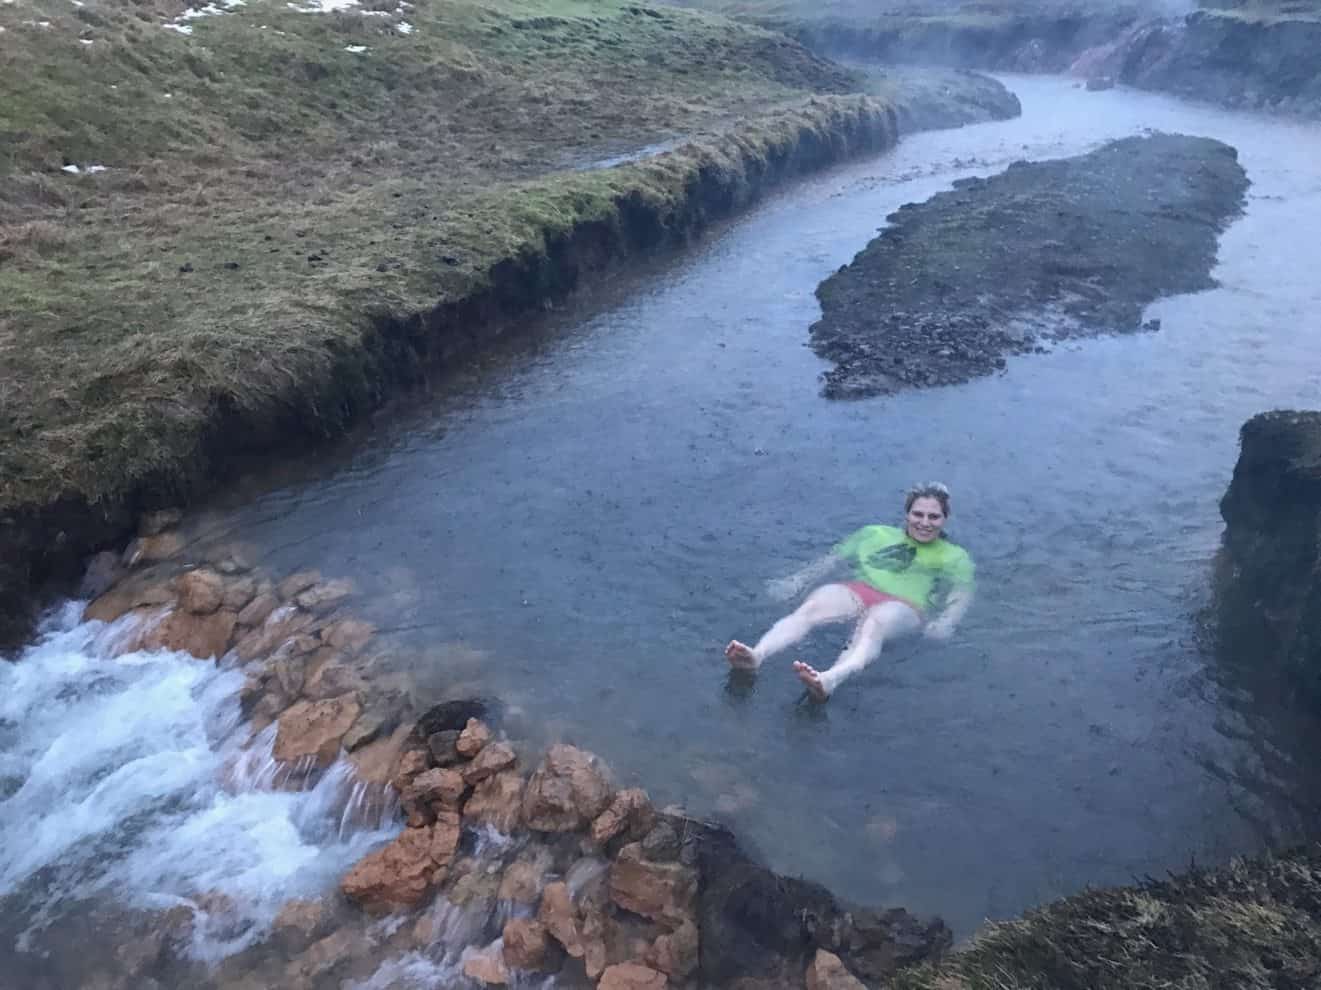 Swimming in the hot spring in Reykjadalur in January